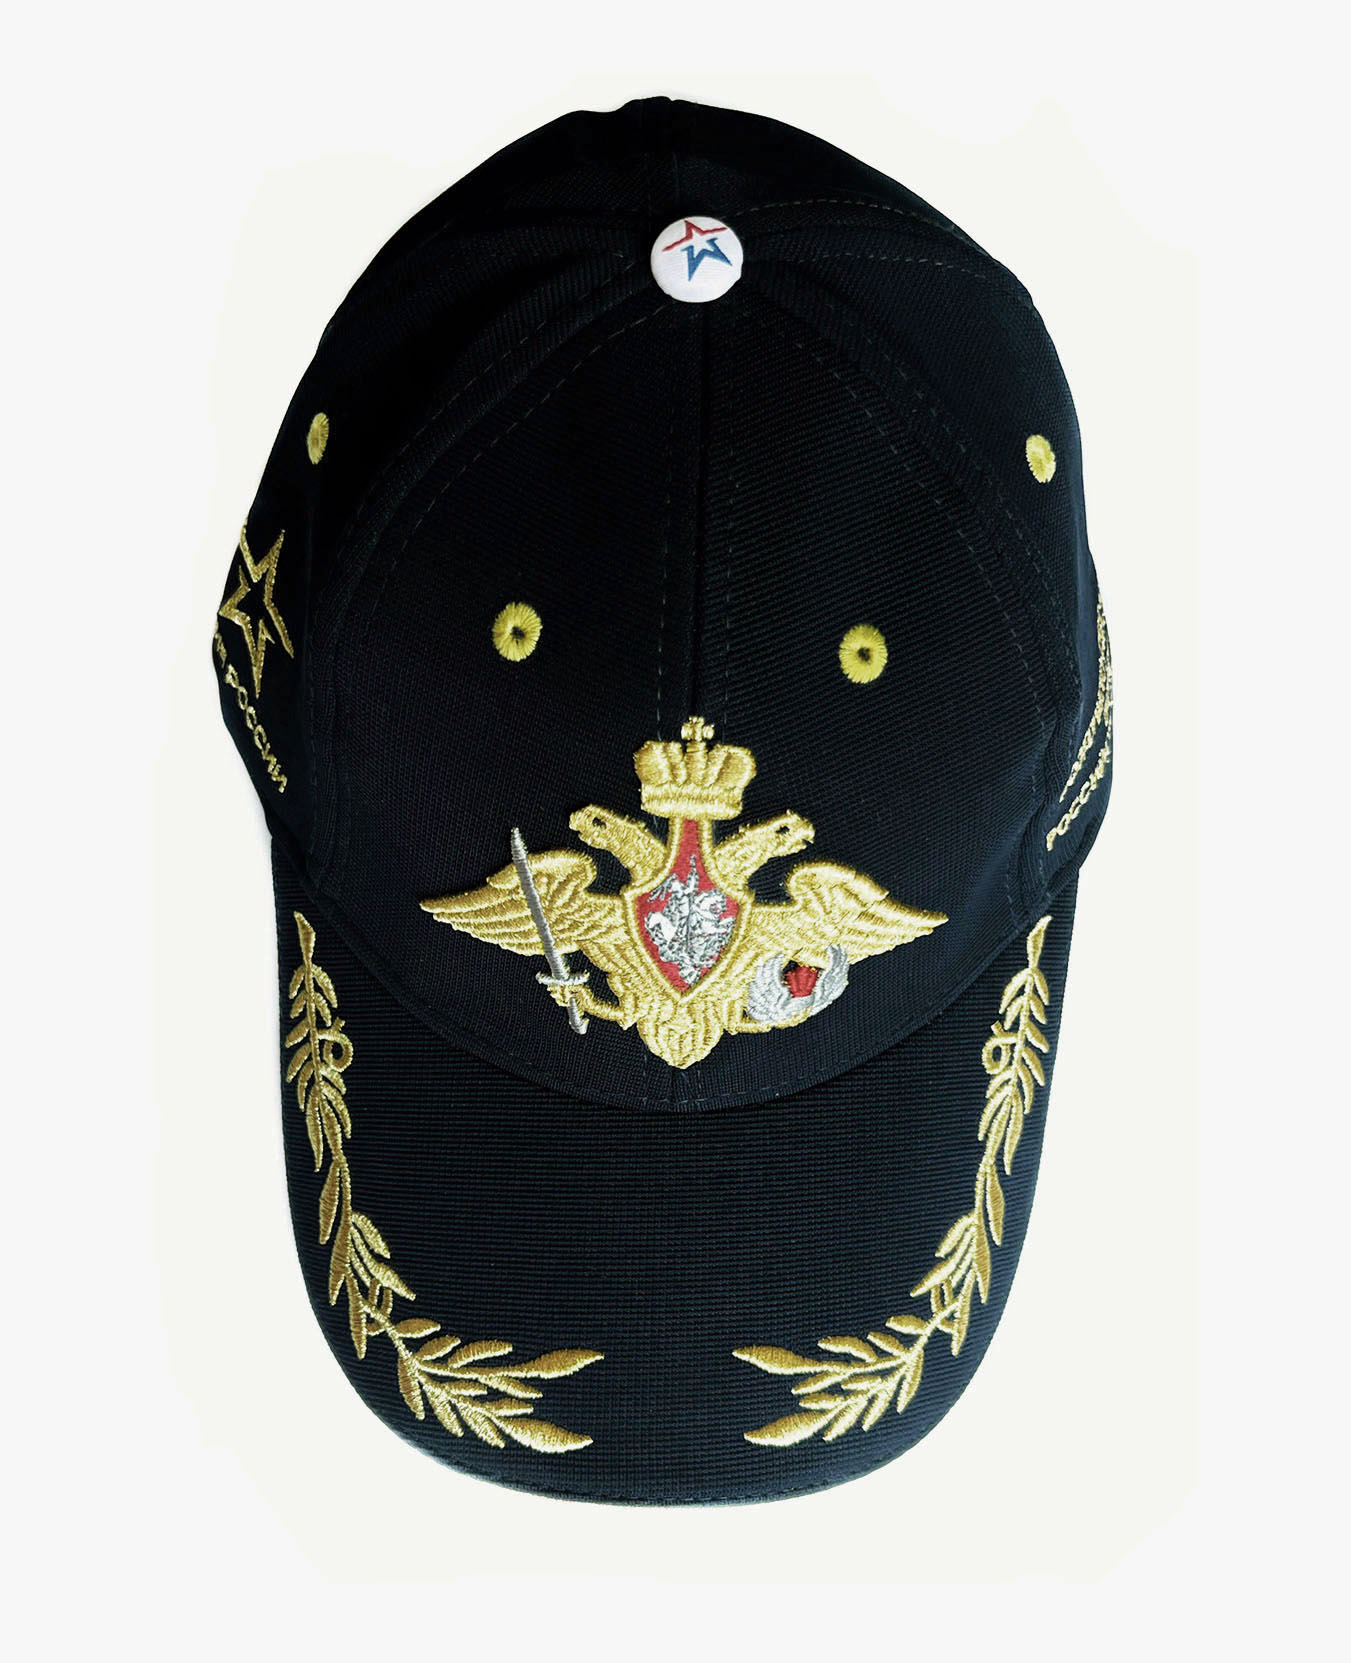 Бейсболка унисекс Золотой герб Вооруженных сил ВДВ, чёрная, р. 56-62